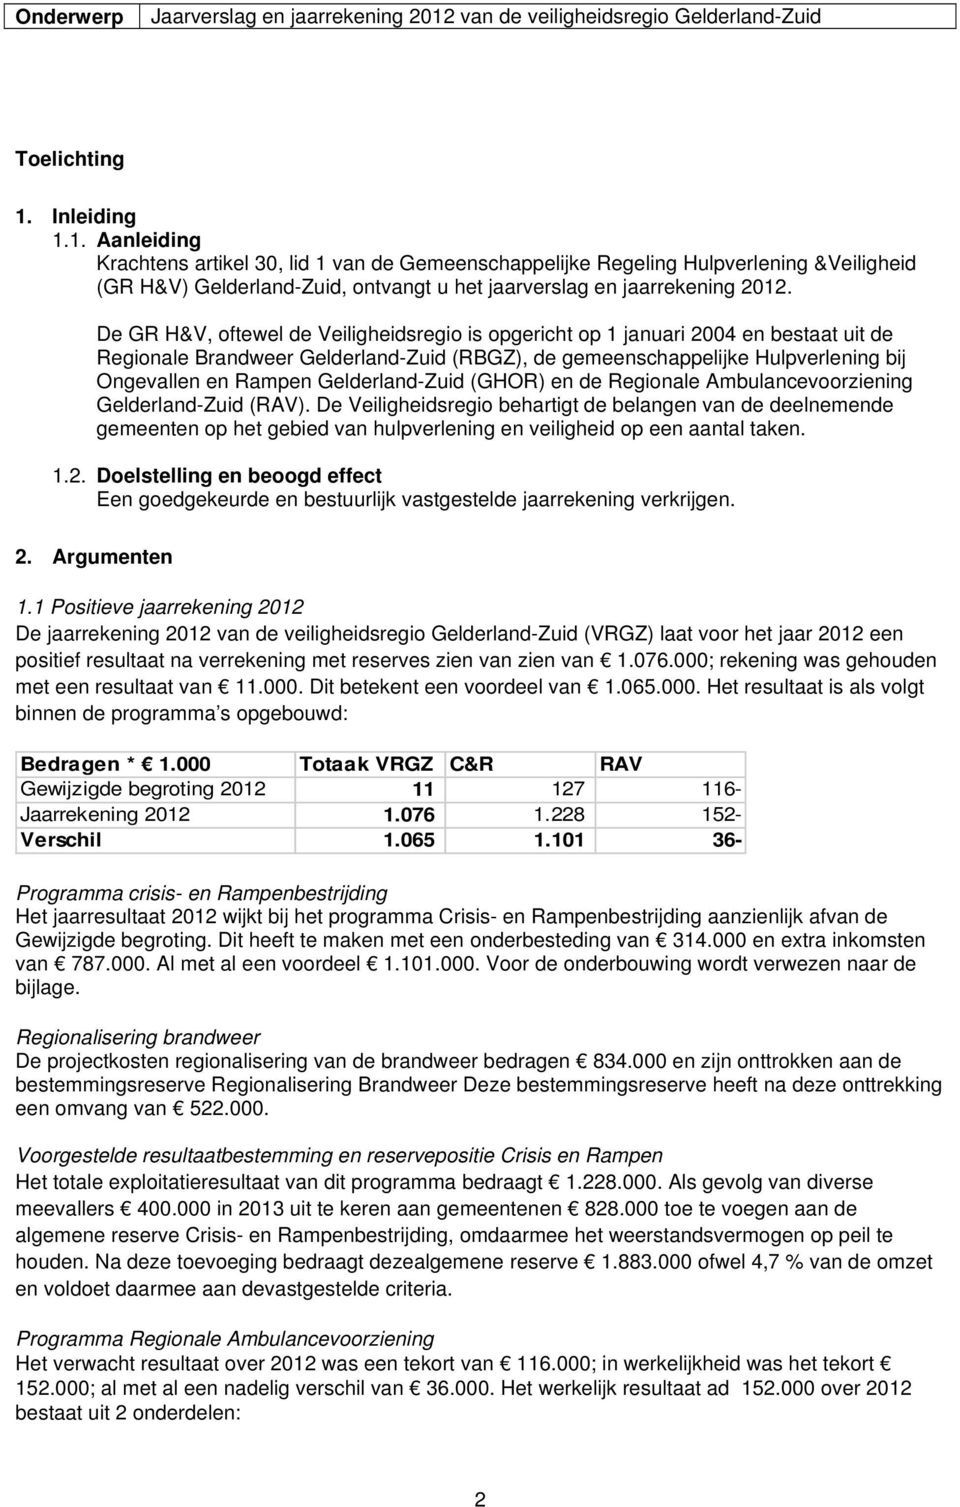 Inleiding 1.1. Aanleiding Krachtens artikel 30, lid 1 van de Gemeenschappelijke Regeling Hulpverlening &Veiligheid (GR H&V) Gelderland-Zuid, ontvangt u het jaarverslag en jaarrekening 2012.